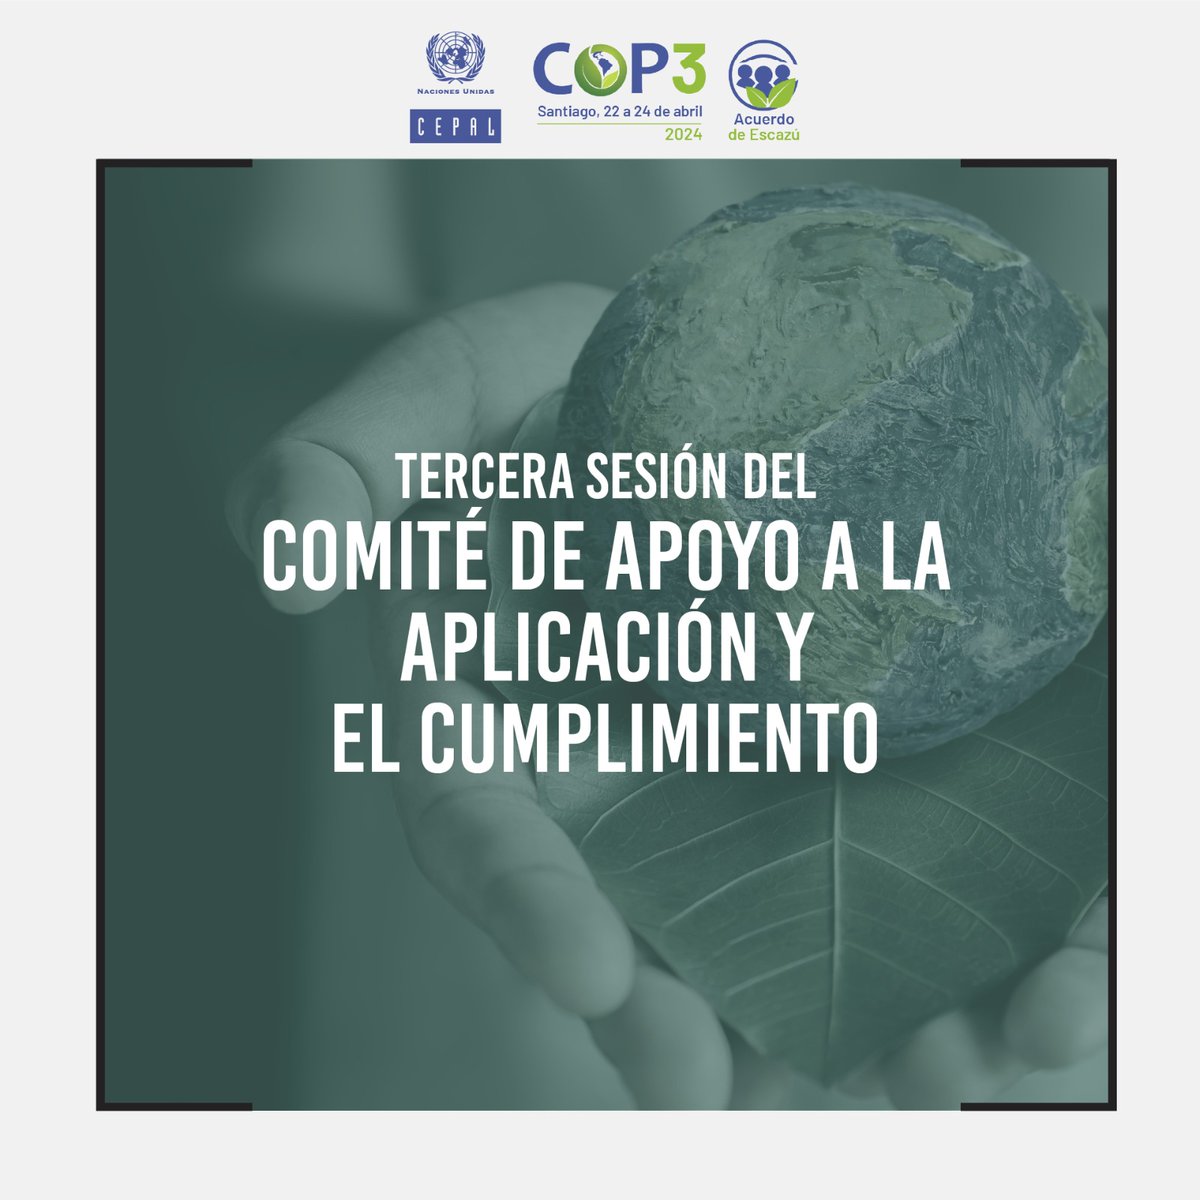 📢EN MINUTOS – 09:00 AM Chile (GMT -4) #COP3Escazú arranca en la sede de la #CEPAL con la Tercera sesión del Comité de Apoyo a la Aplicación y el Cumplimiento del #AcuerdoDeEscazú🌿. EN VIVO 📺 bit.ly/3UXZrHp Programa 👉 bit.ly/3QenfGF